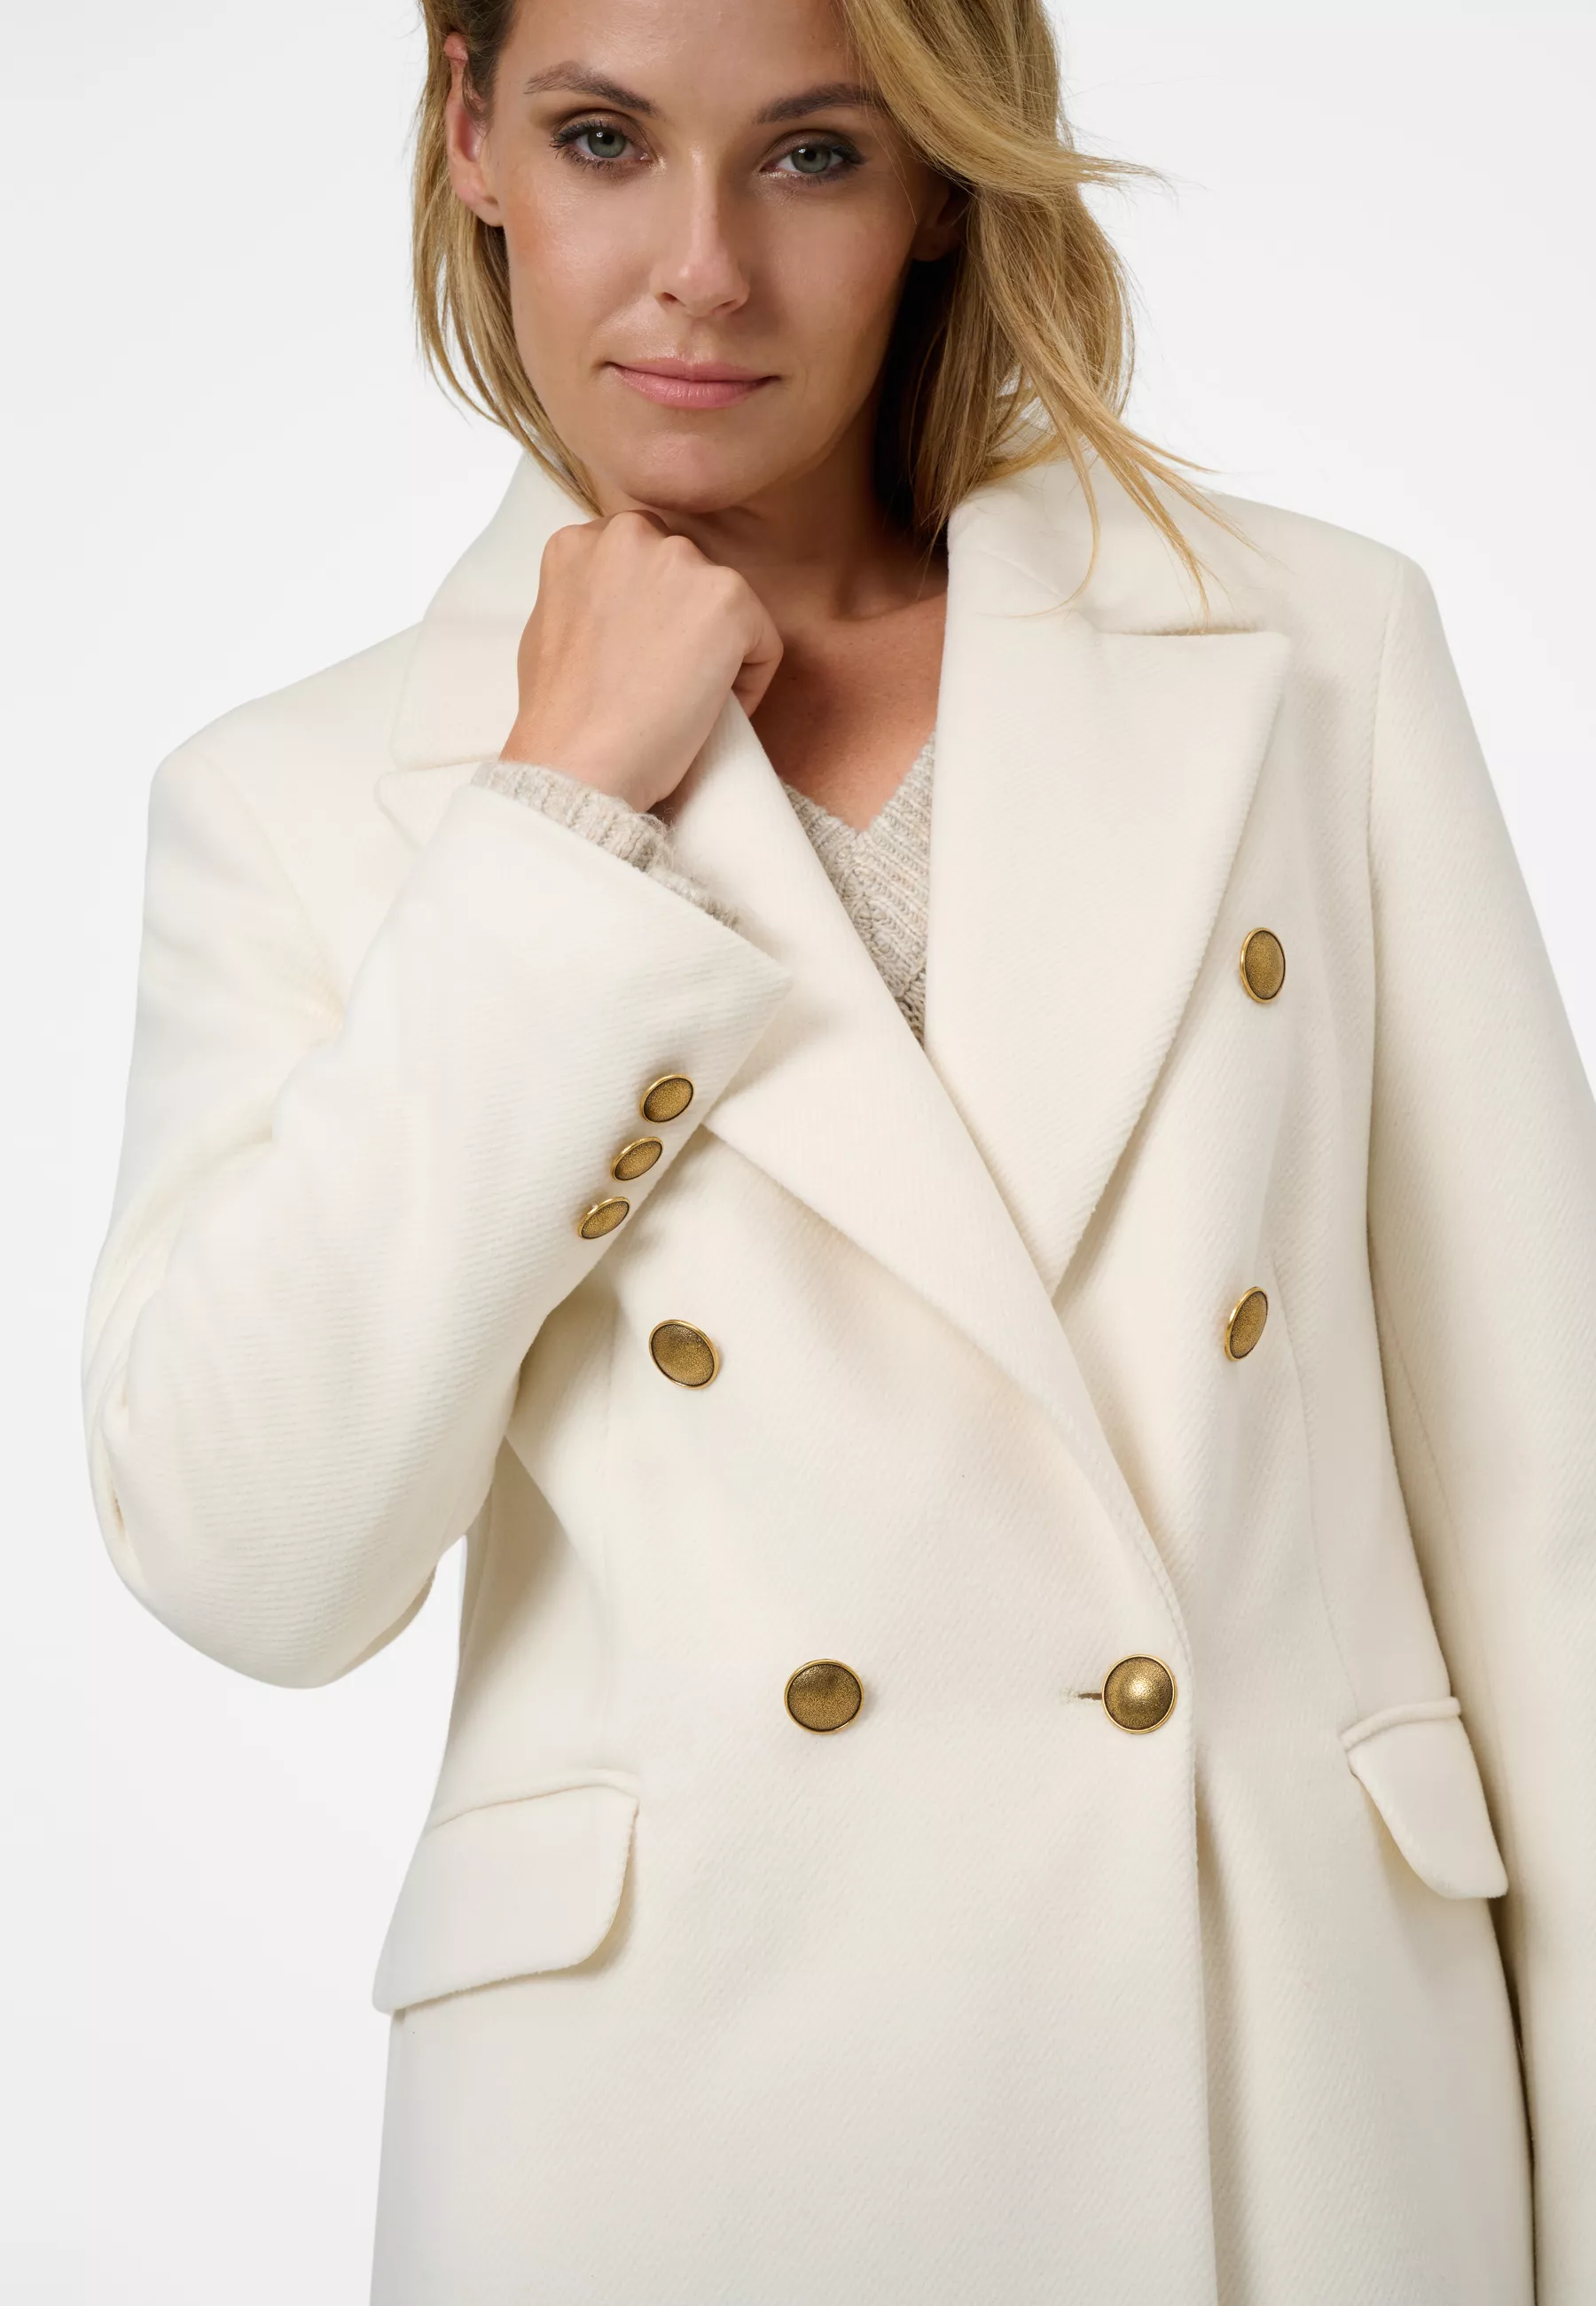 Damen Textil Mantel Giulia in Weiß von Ricano, Detailansicht am Model